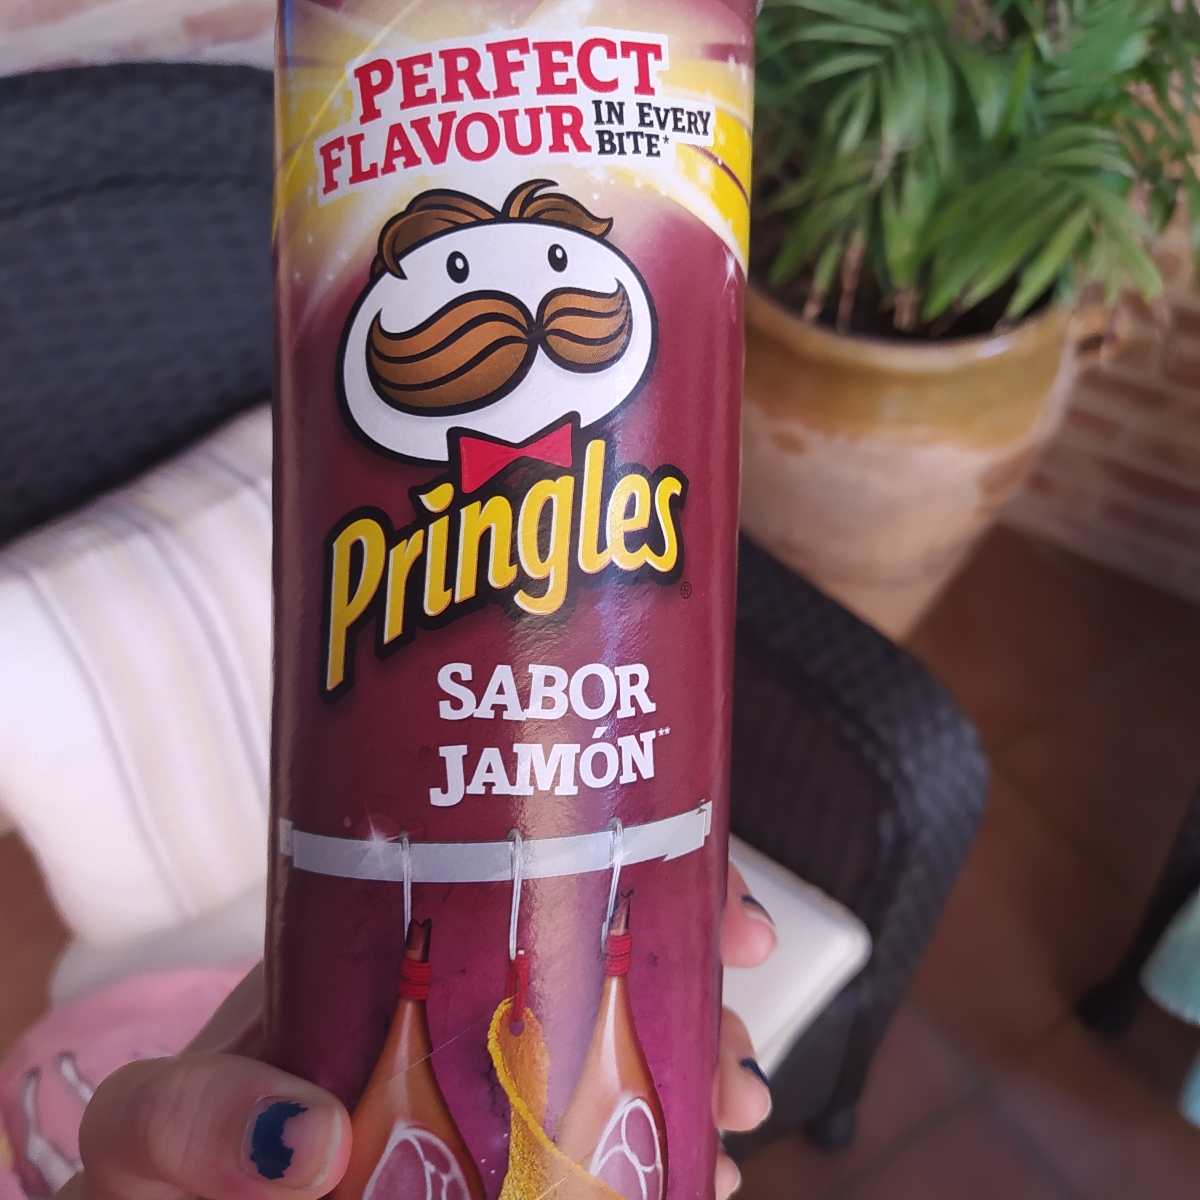 Pringles Pringles Sabor Jamón Review | abillion